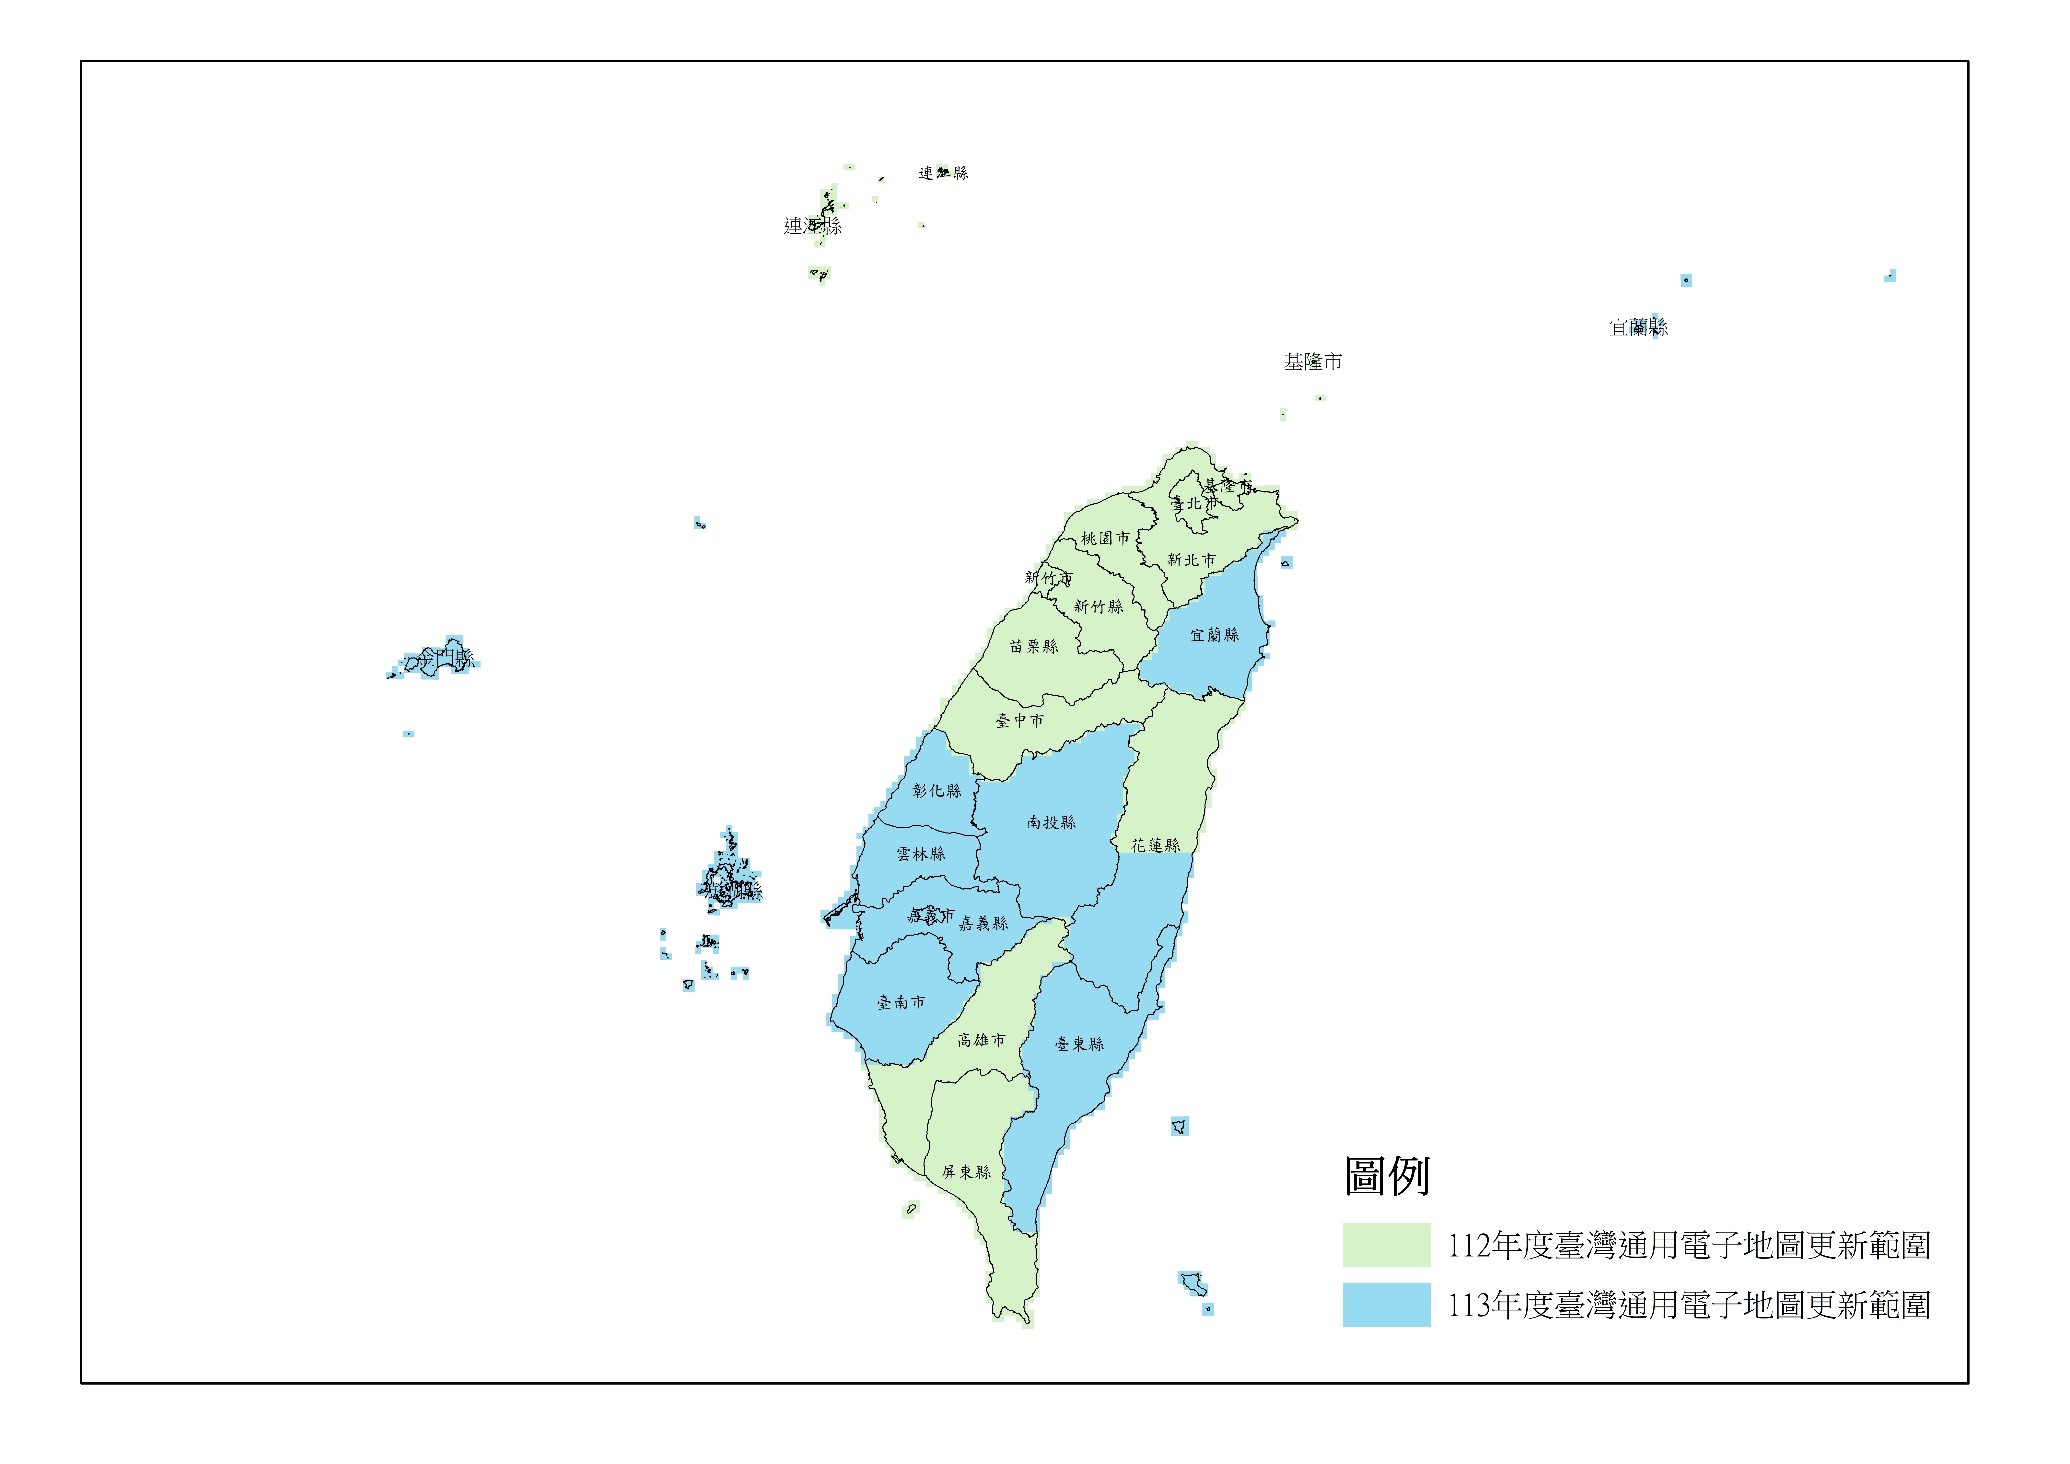 臺灣通用電子地圖最新測製年度及範圍圖